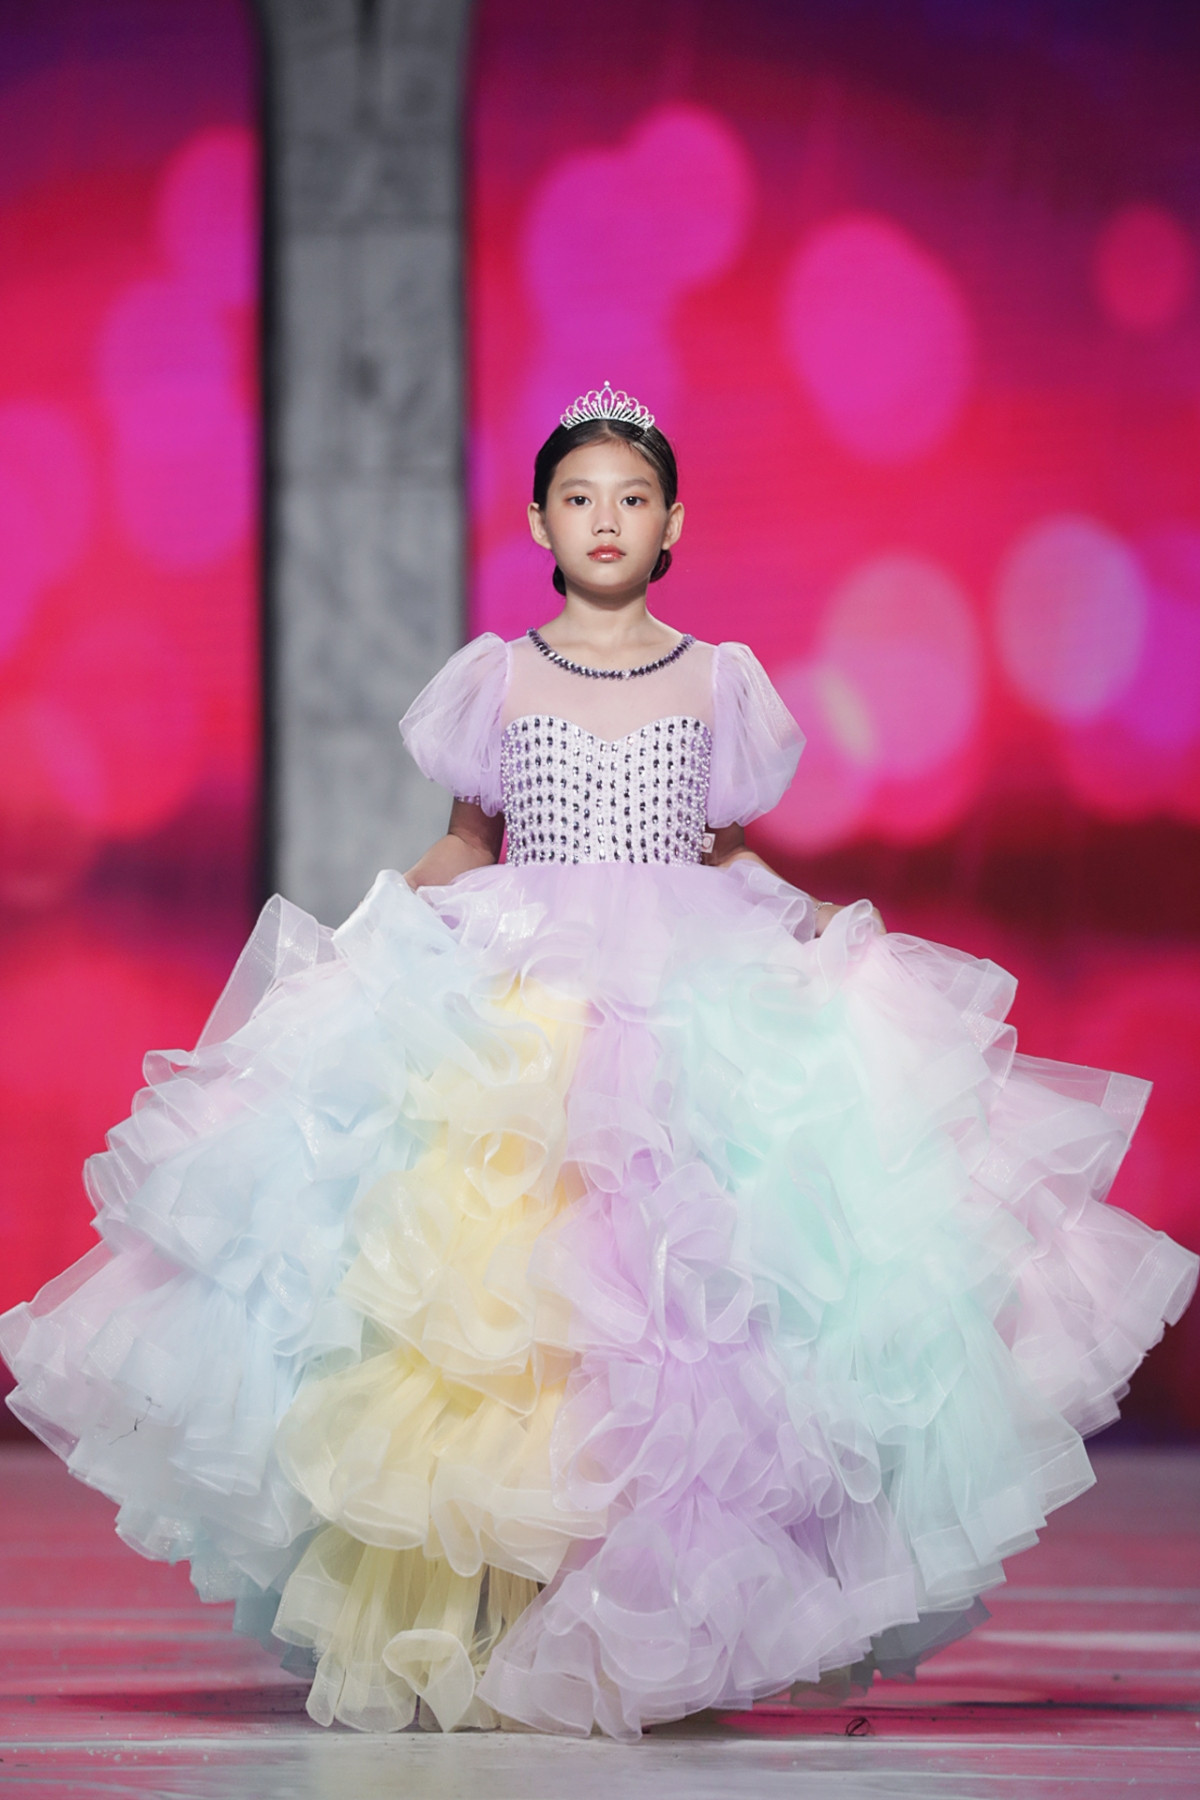 Đến với Vietnam Junior Fashion Week lần này, Những bông hoa nhỏ mang đến BST “Dance of the Swans” được lấy cảm hứng từ hình ảnh của đôi thiên nga vỗ đôi cánh nhẹ nhàng, thanh tao giữa trời tuyết trắng xóa tuyệt đẹp.